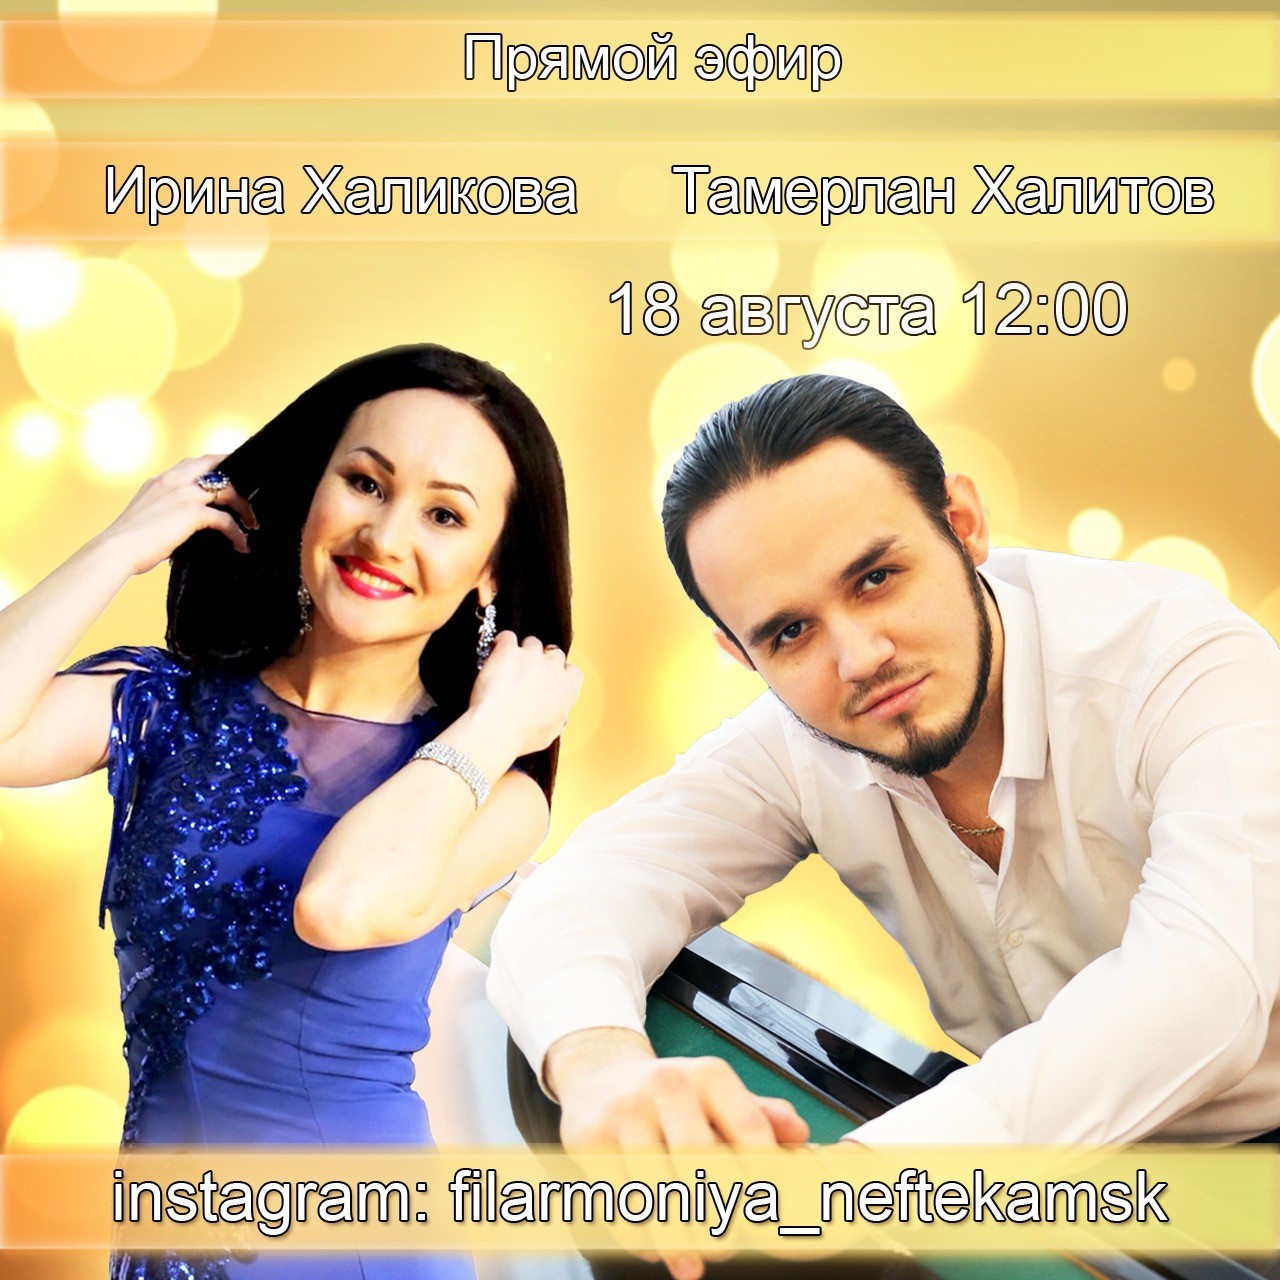 Тамерлан Халитов и Ирина Халикова готовят онлайн-концерт